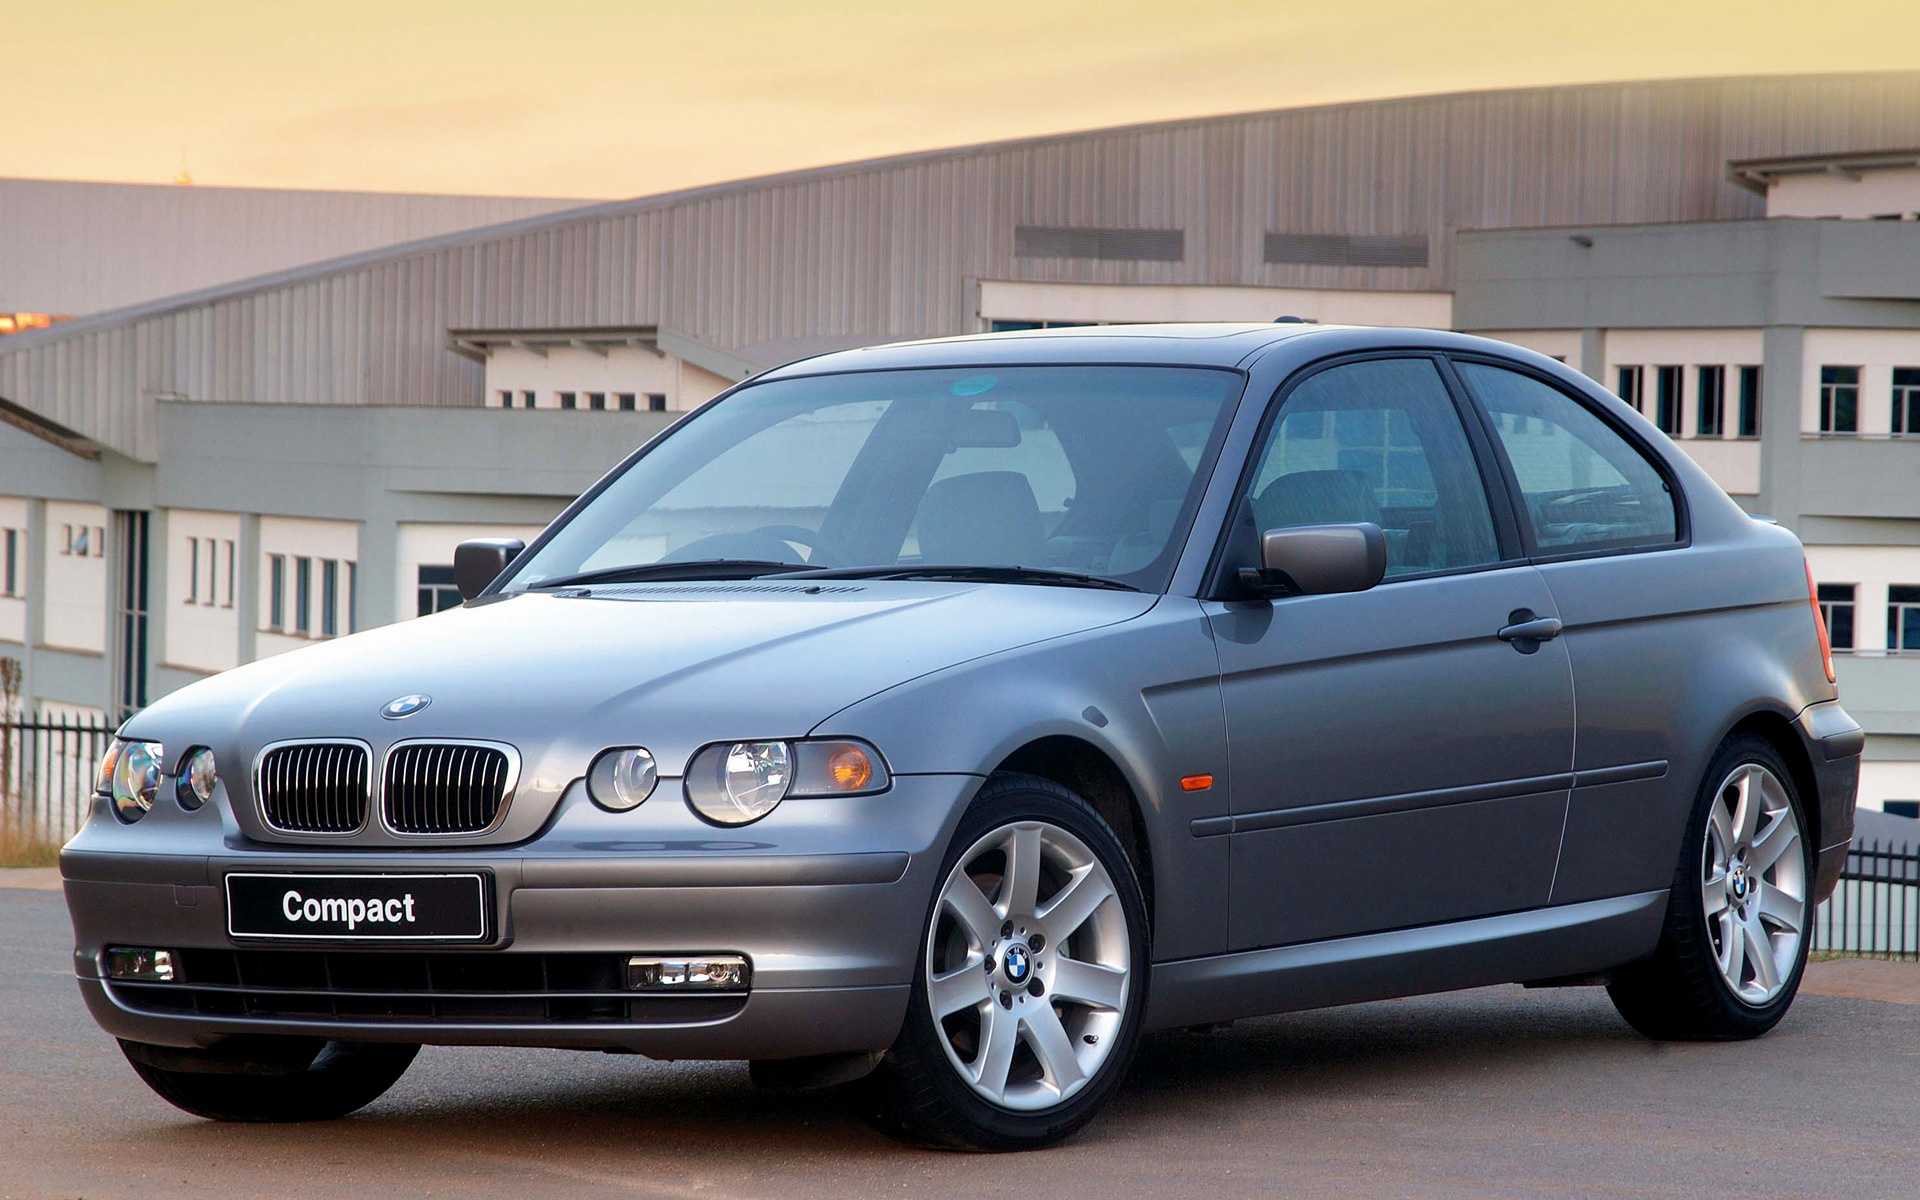 Технические характеристики BMW 318i 2002-2005 в автокаталоге CarExpertru Размеры и масса BMW 318i 2002-2005 Клиренс BMW 3-series Мощность двигателя BMW 318i 2002-2005 Расход топлива BMW 318i 2002-2005 Максимальная скорость BMW 318i 2002-2005 Подвеска BMW